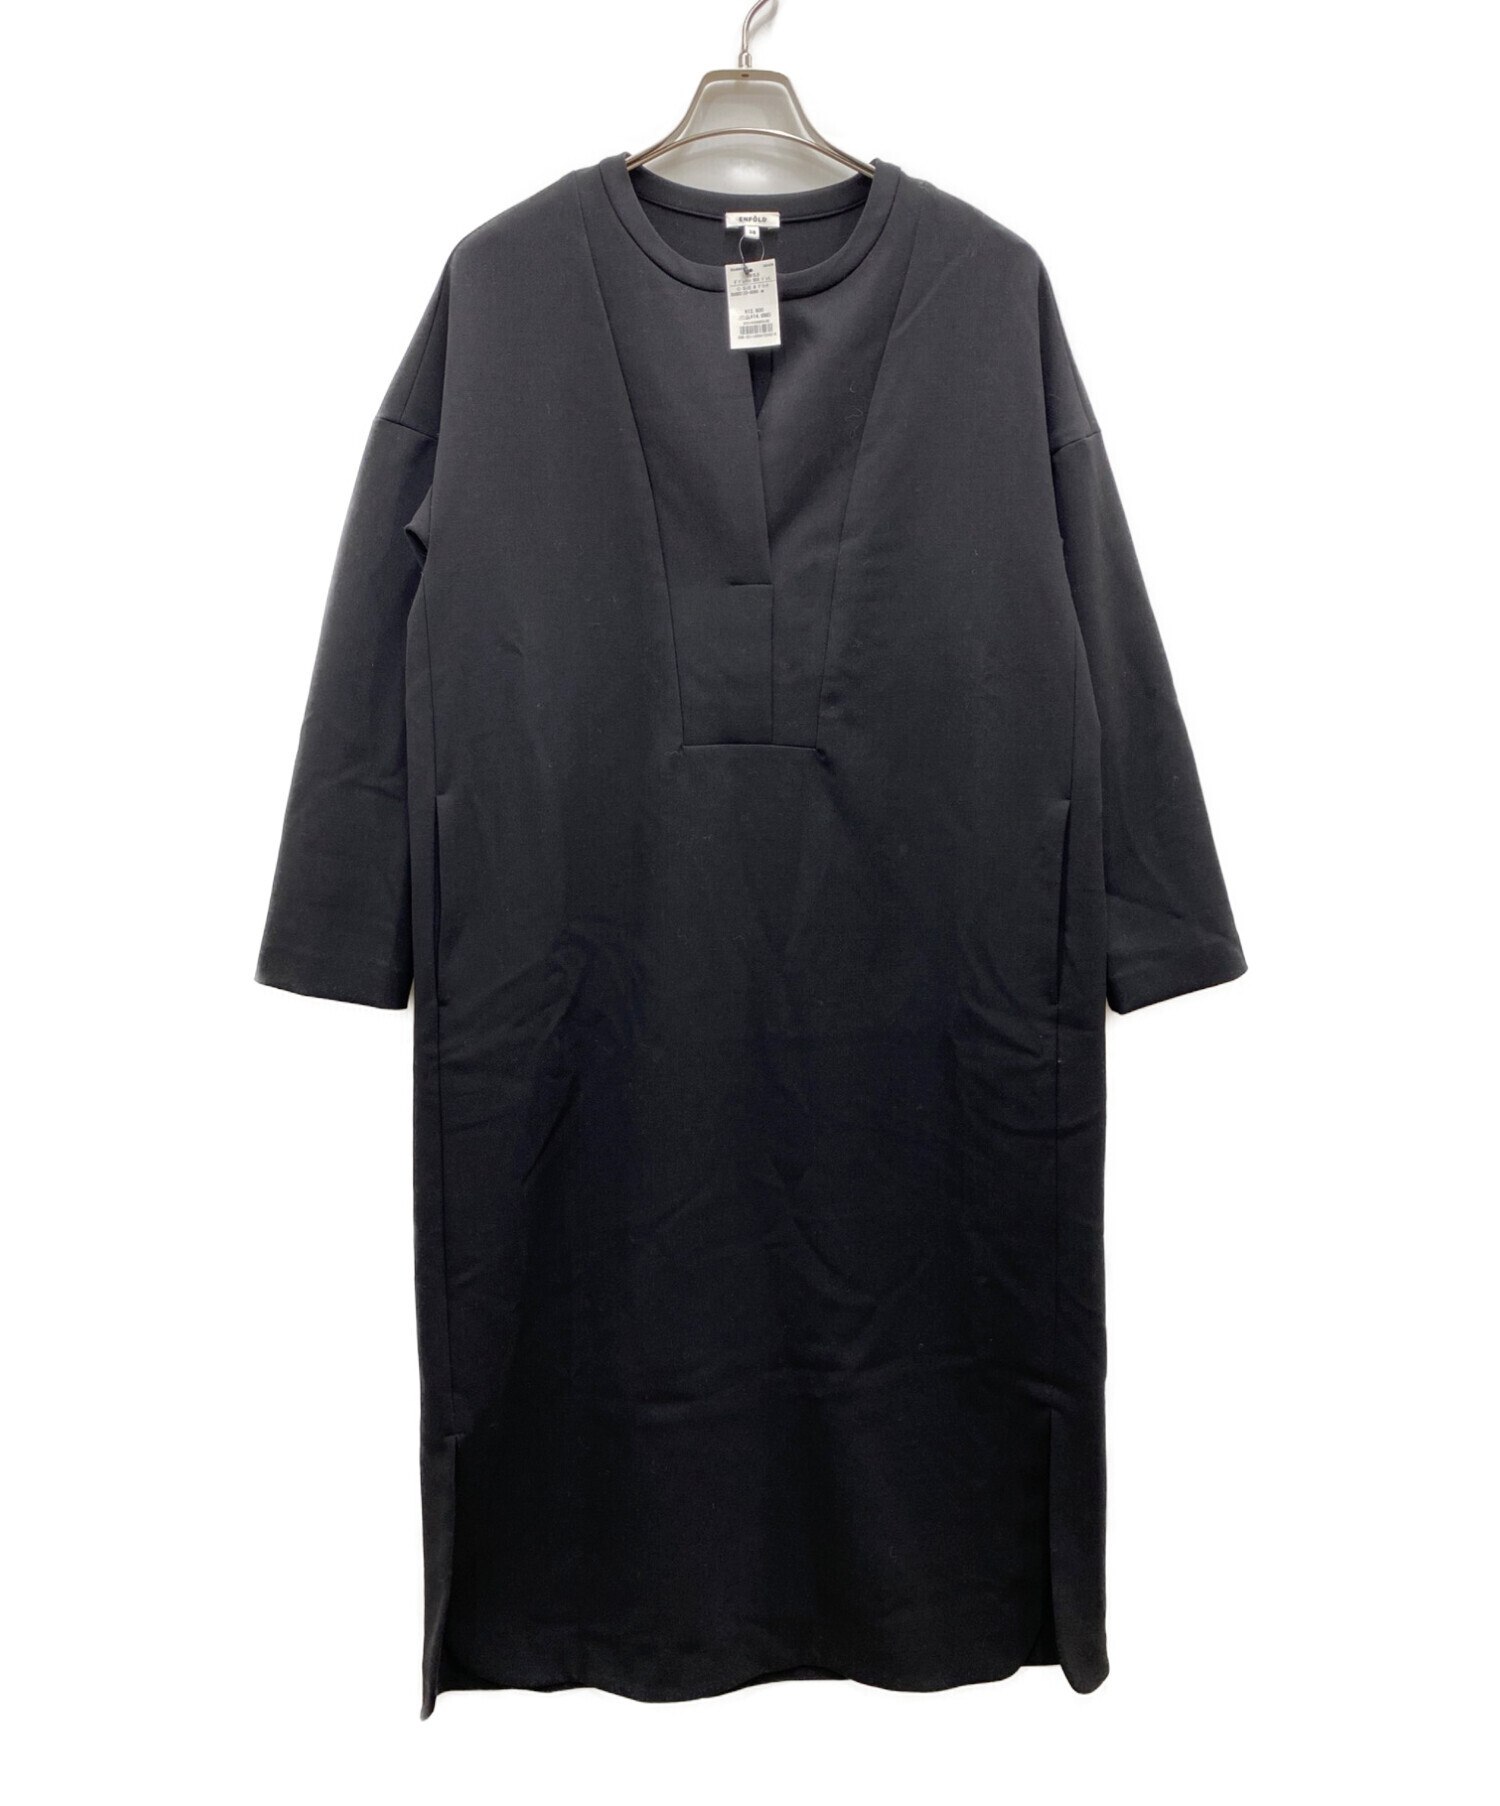 ENFOLD (エンフォルド) ダブルクロス BOX ドレス. ブラック サイズ:38